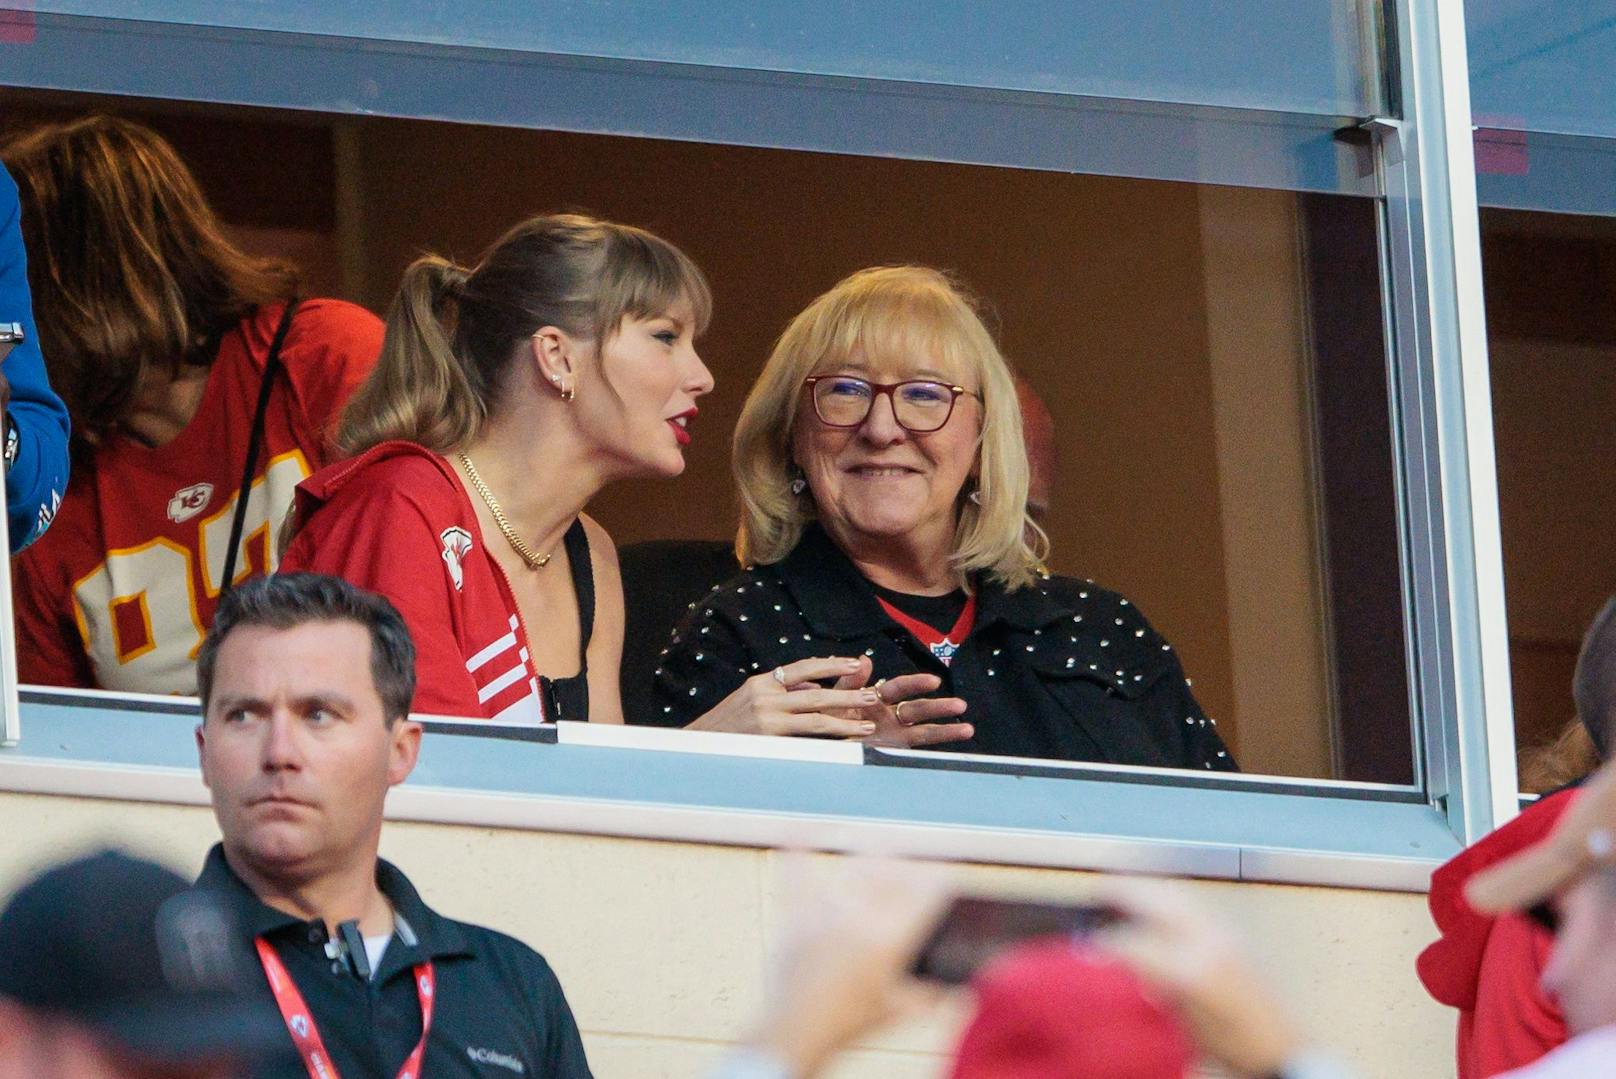 Sogar mit der Mutter von Travis Kelce sah man Taylor Swift bereits innig plaudern.